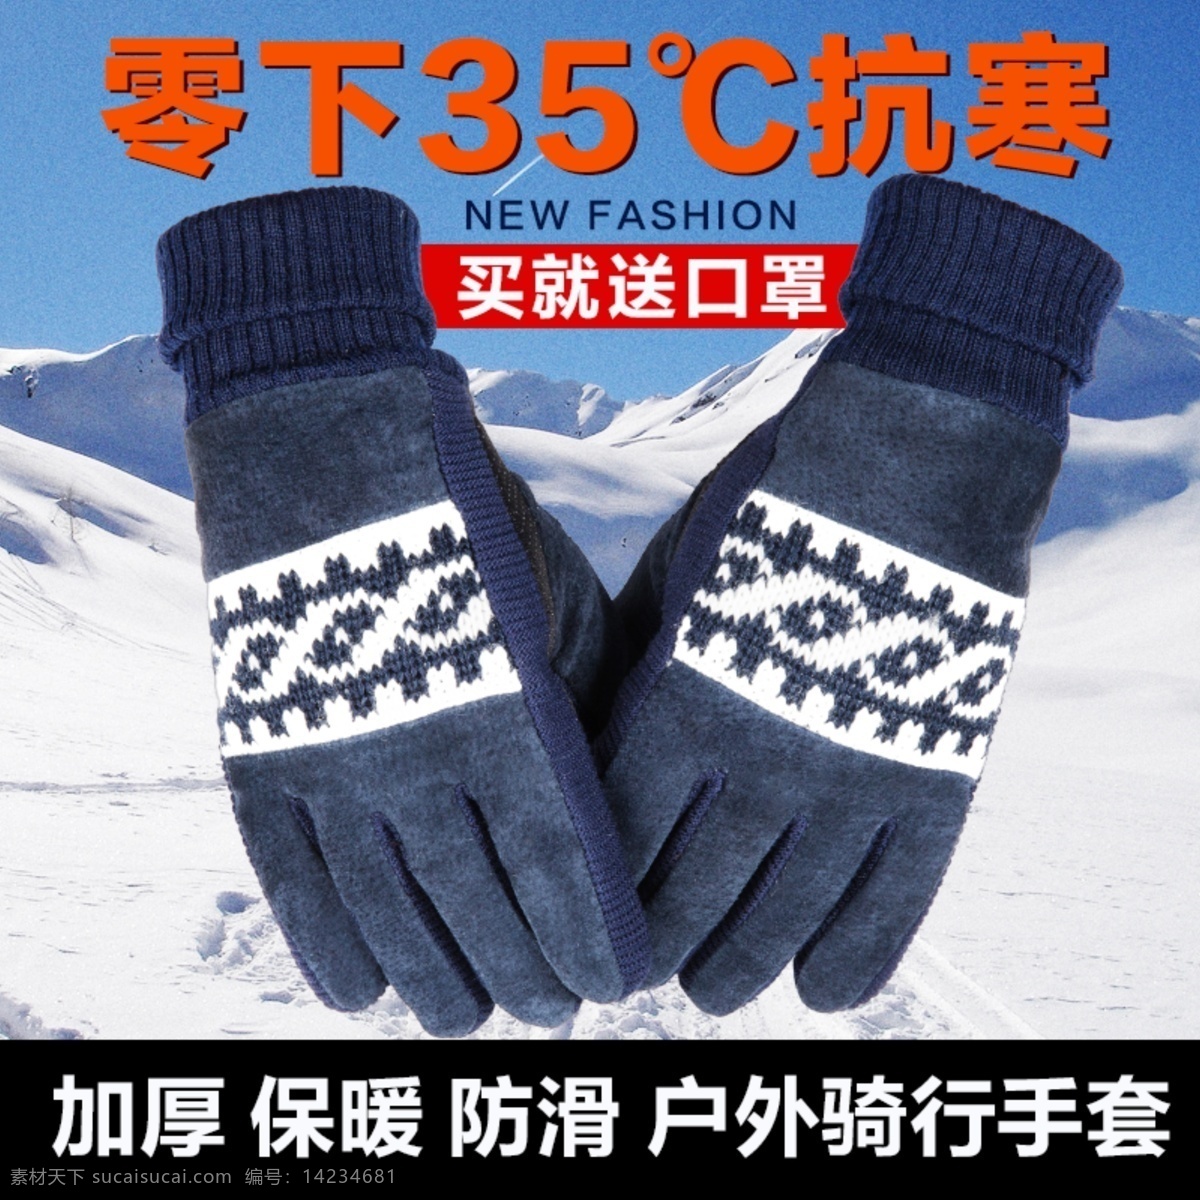 手套主图 淘宝 手套 直通车 图 户外专用手套 冬季手套 保暖手套